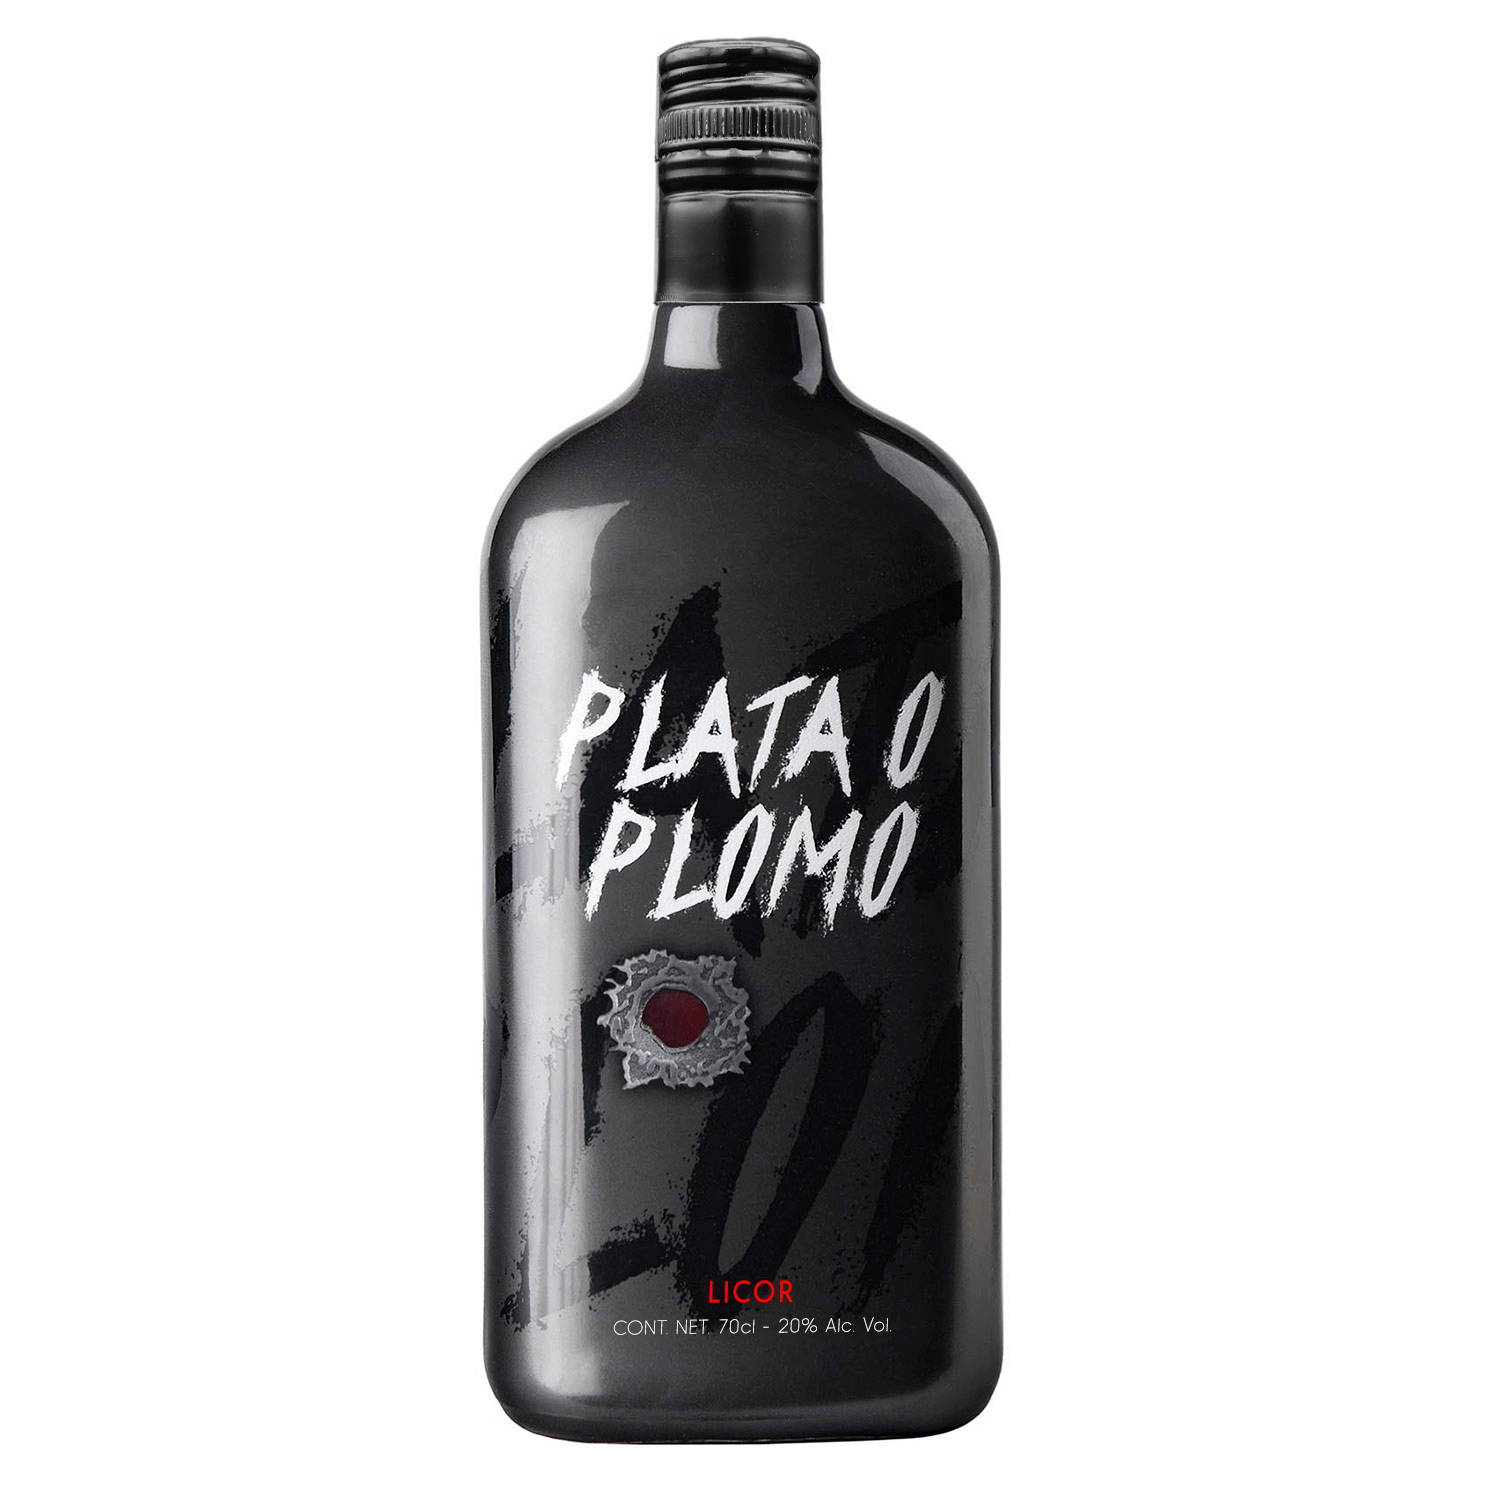 Bottle of Plata o Plomo - Licor Plata o Plomo